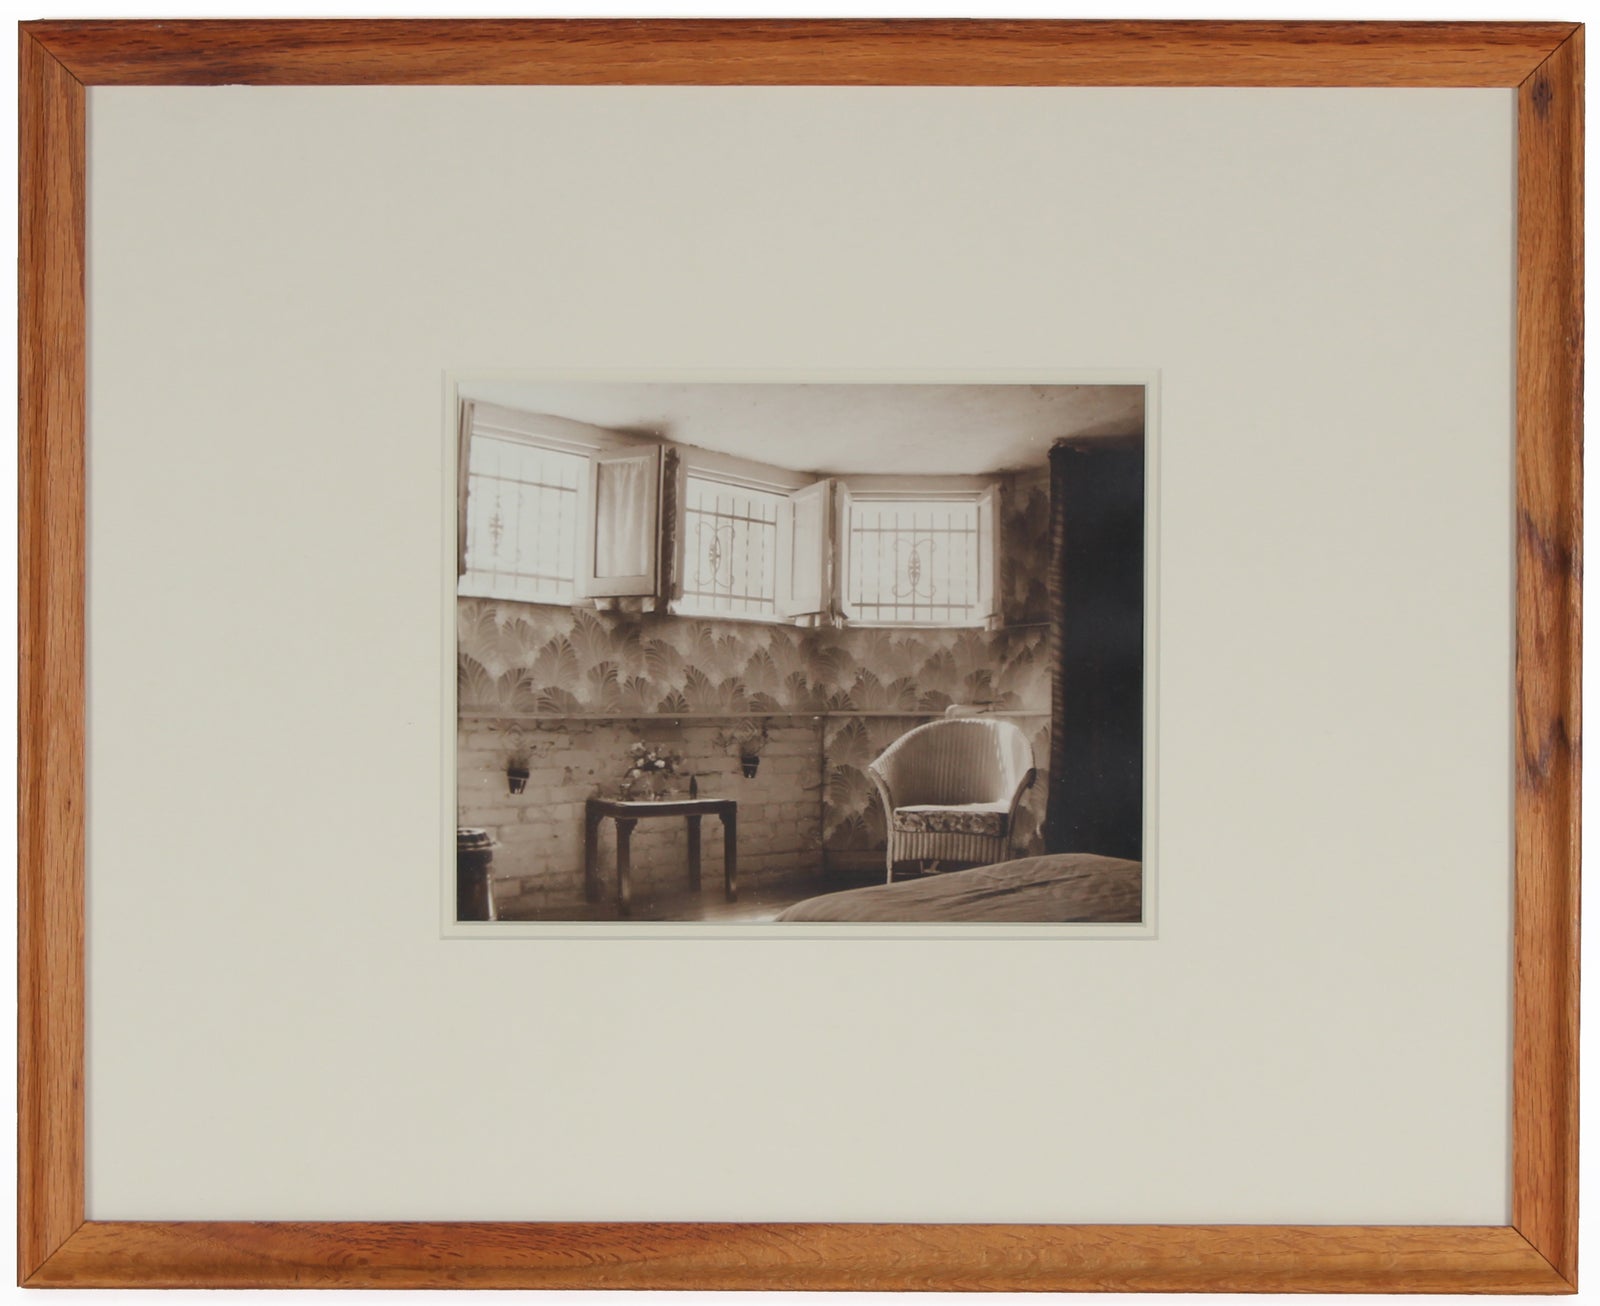 Mid 20th Century Sepia-Toned Interior Scene Photograph<br><br>#4196